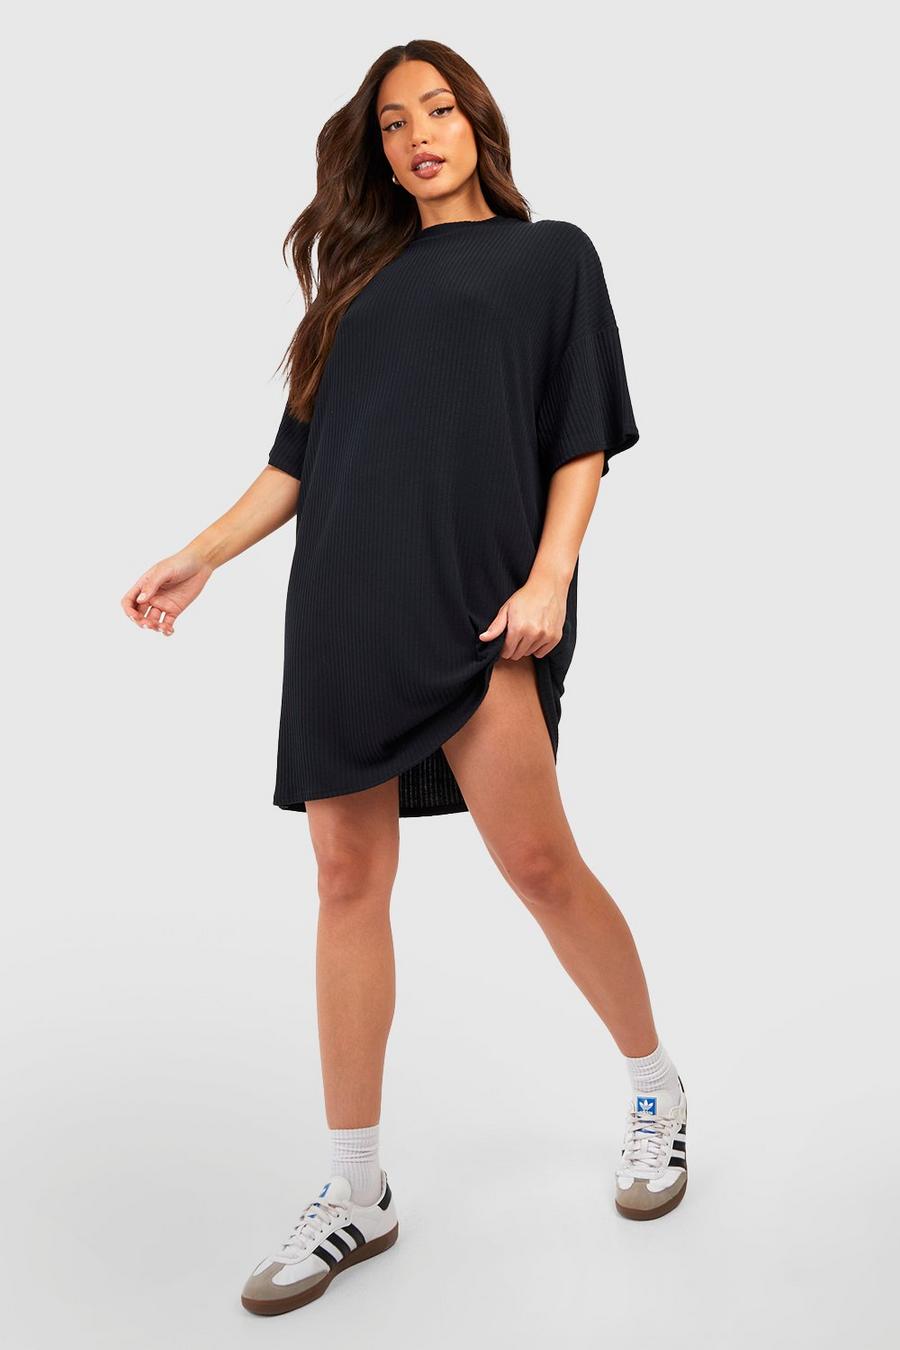 Black Tall Soft Rib oliveleeve T-shirt Dress